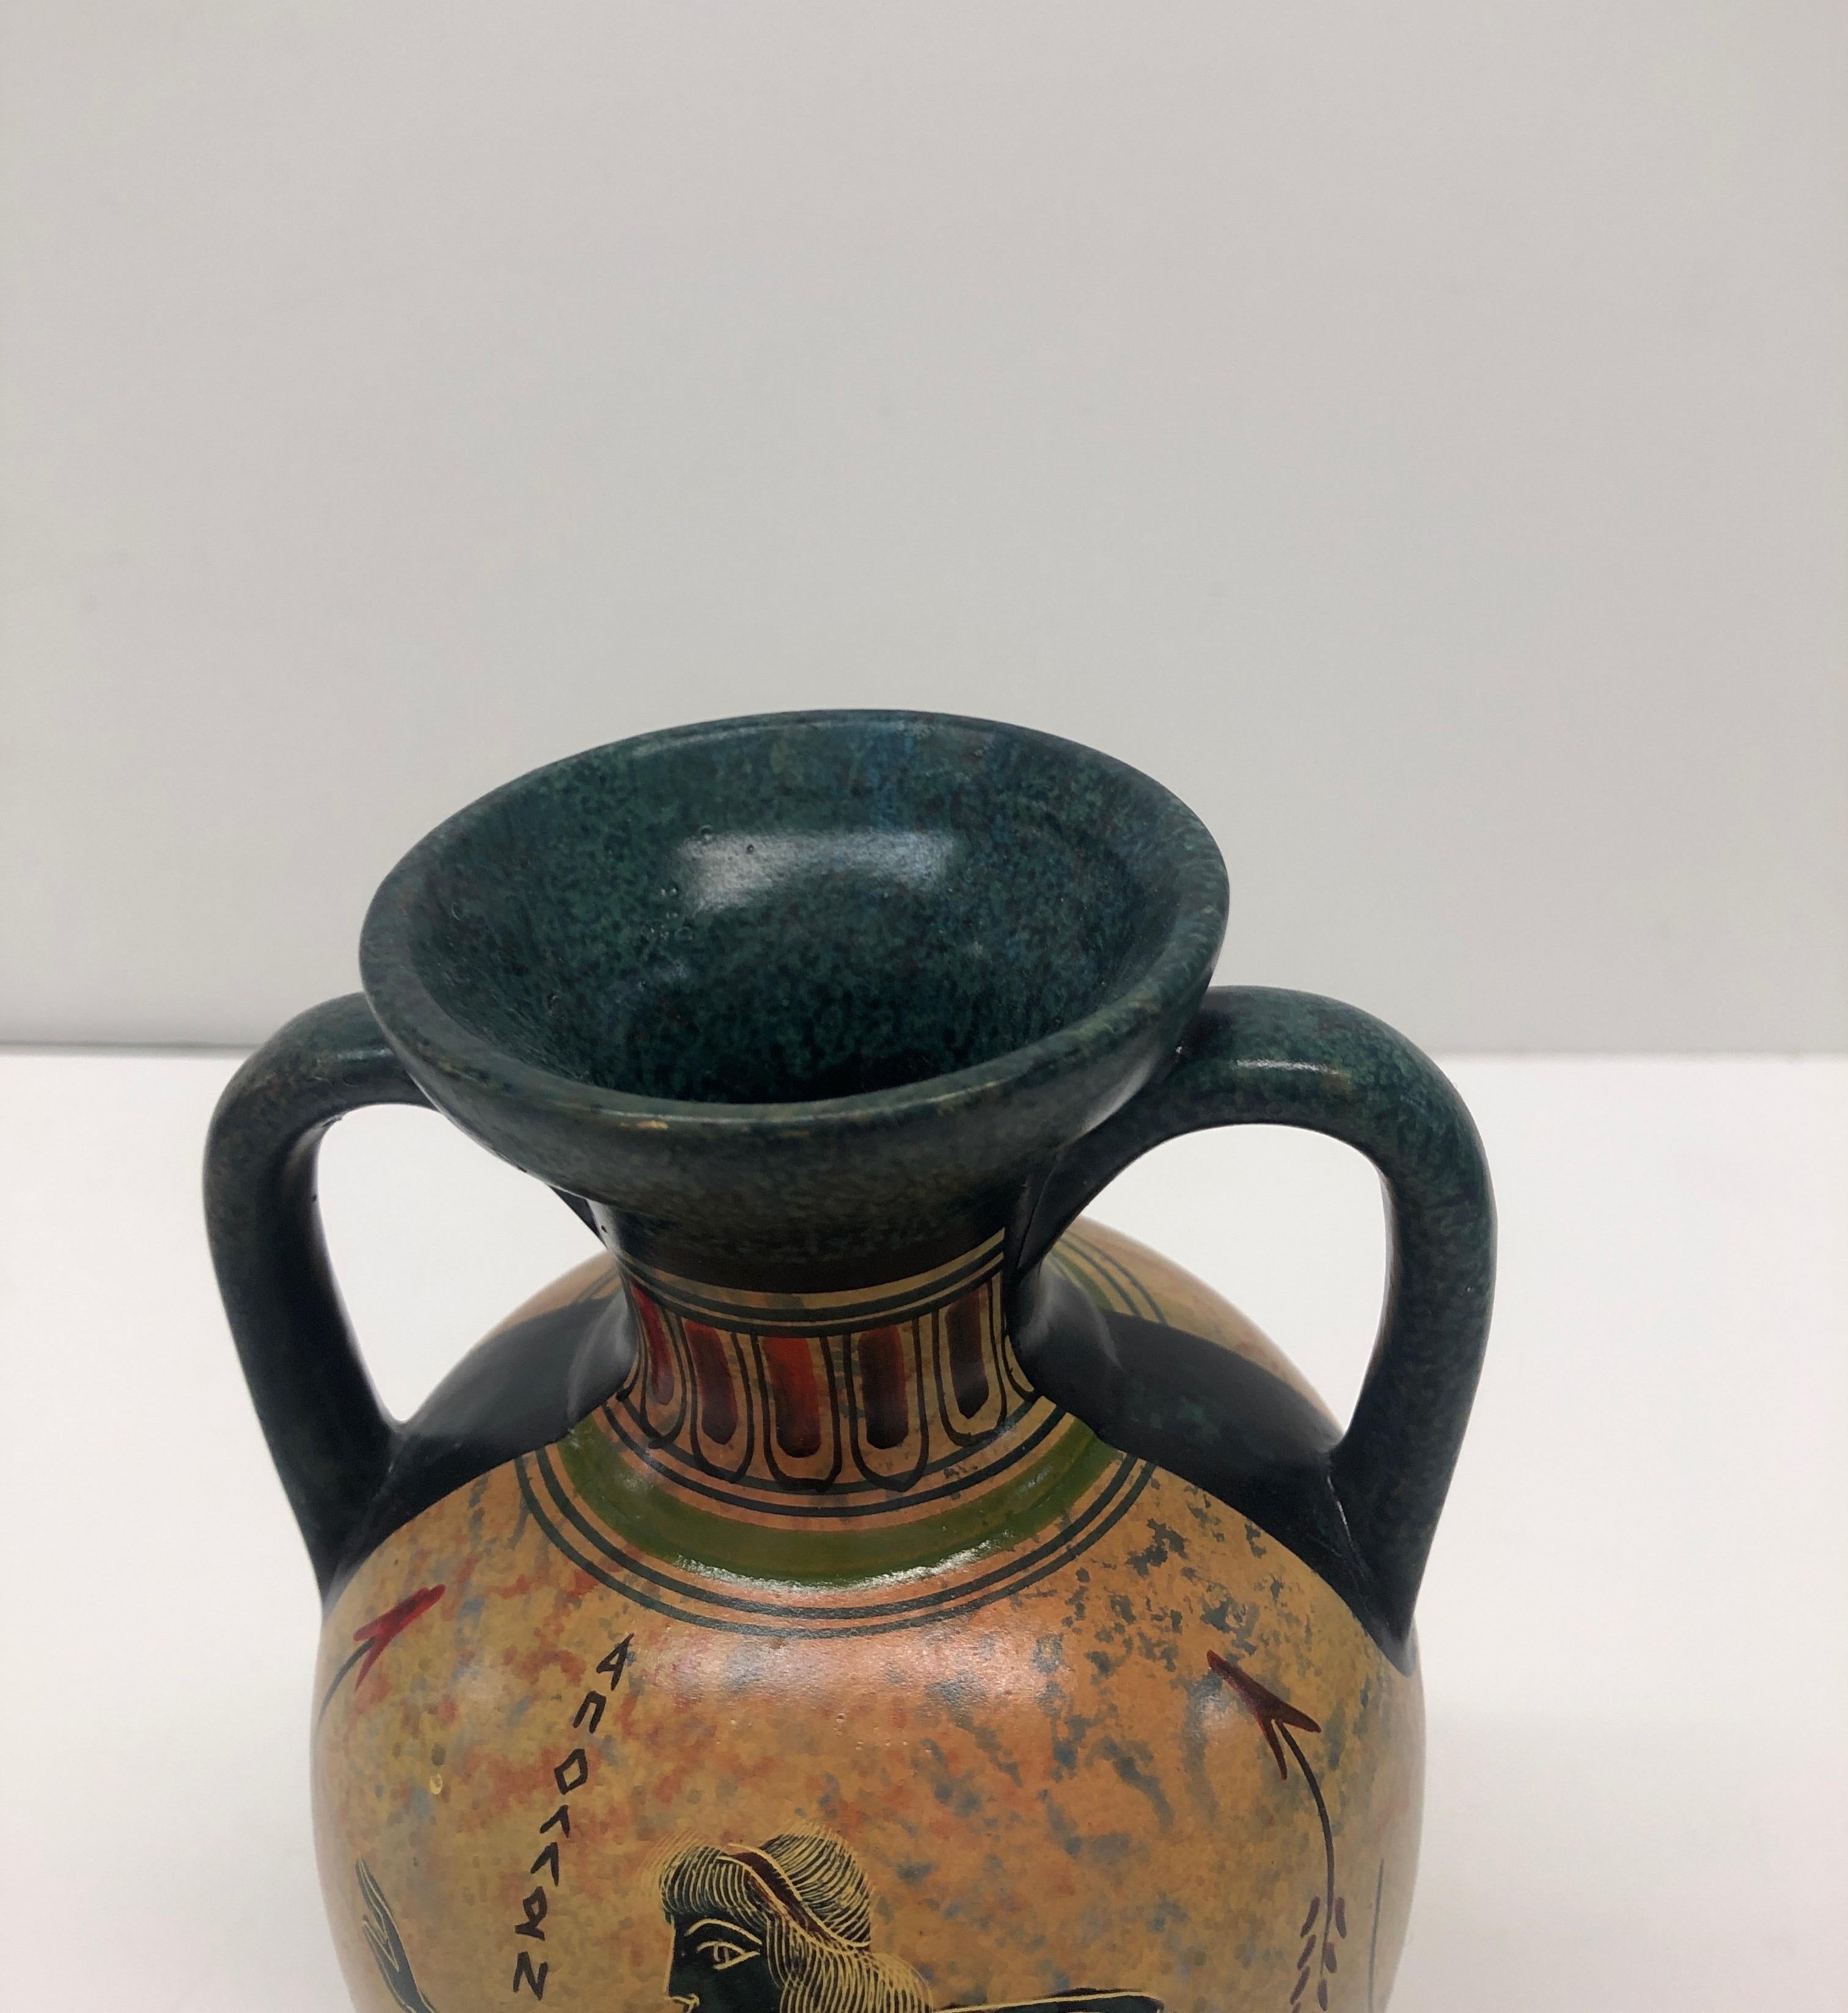 Vintage hand painted Greek amphora.
Size: 4” D x 7” H.